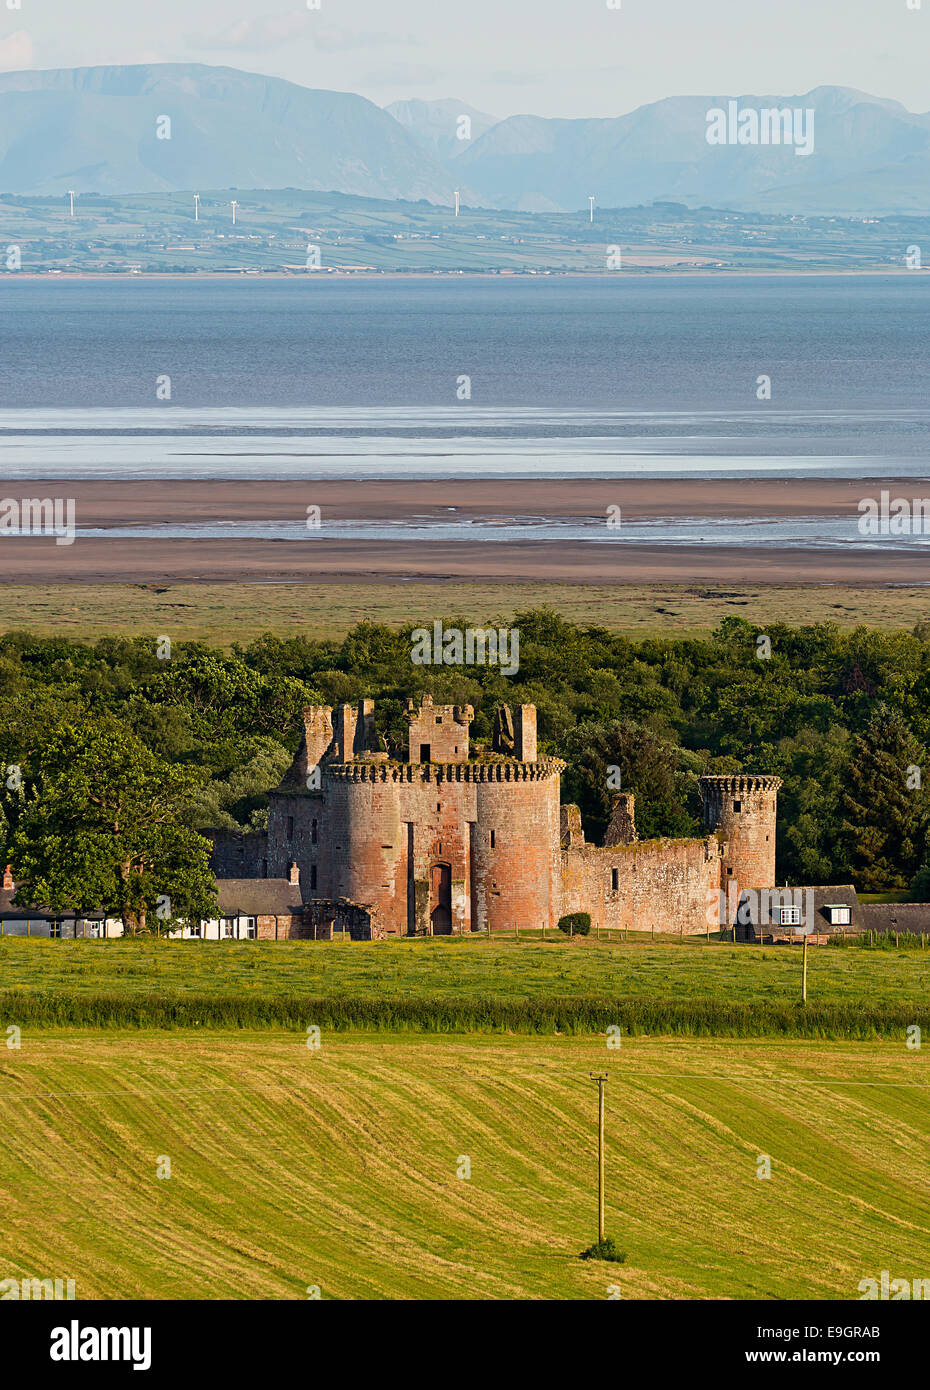 Caerlaverock Castle mostrada dentro del paisaje que la rodea, dándole su posición al lado del estuario Solway en Dumfries y Galloway Foto de stock